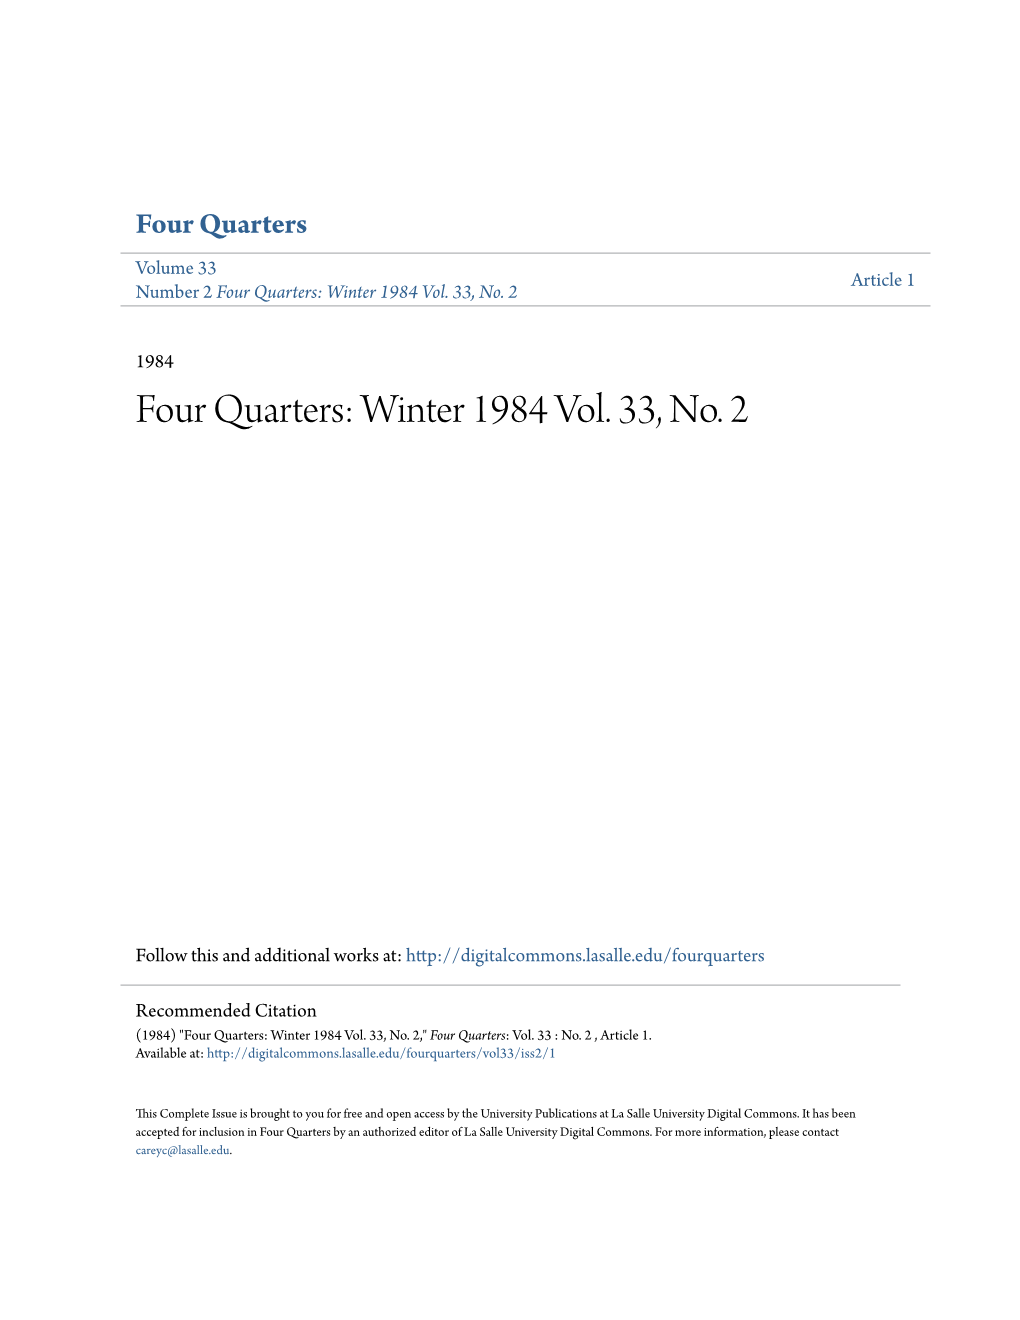 Four Quarters: Winter 1984 Vol. 33, No. 2